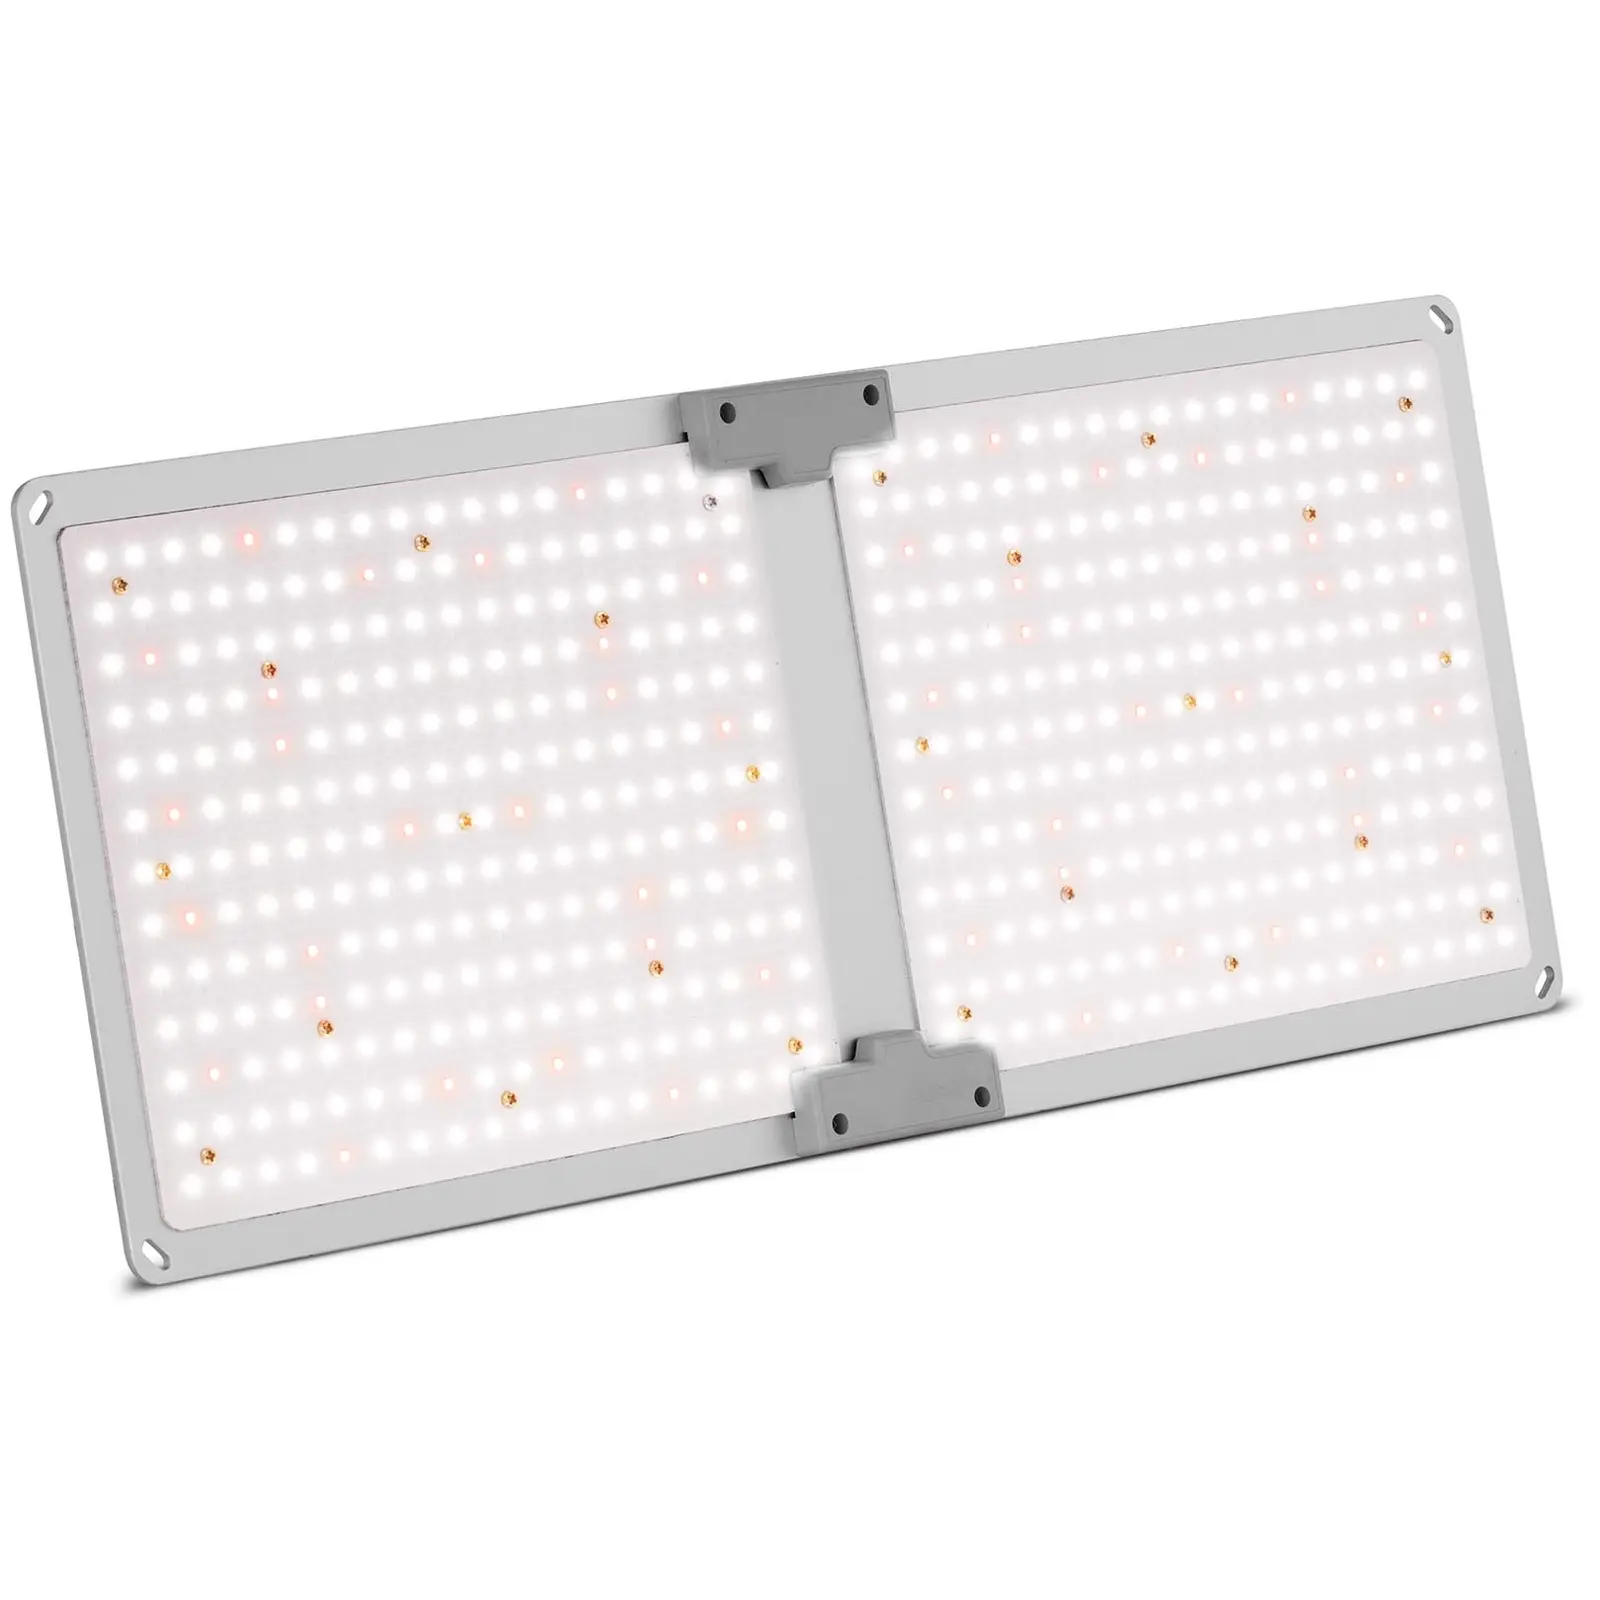 Lampe LED pour plante - Spectre complet - 1,000 watts - 234 LED